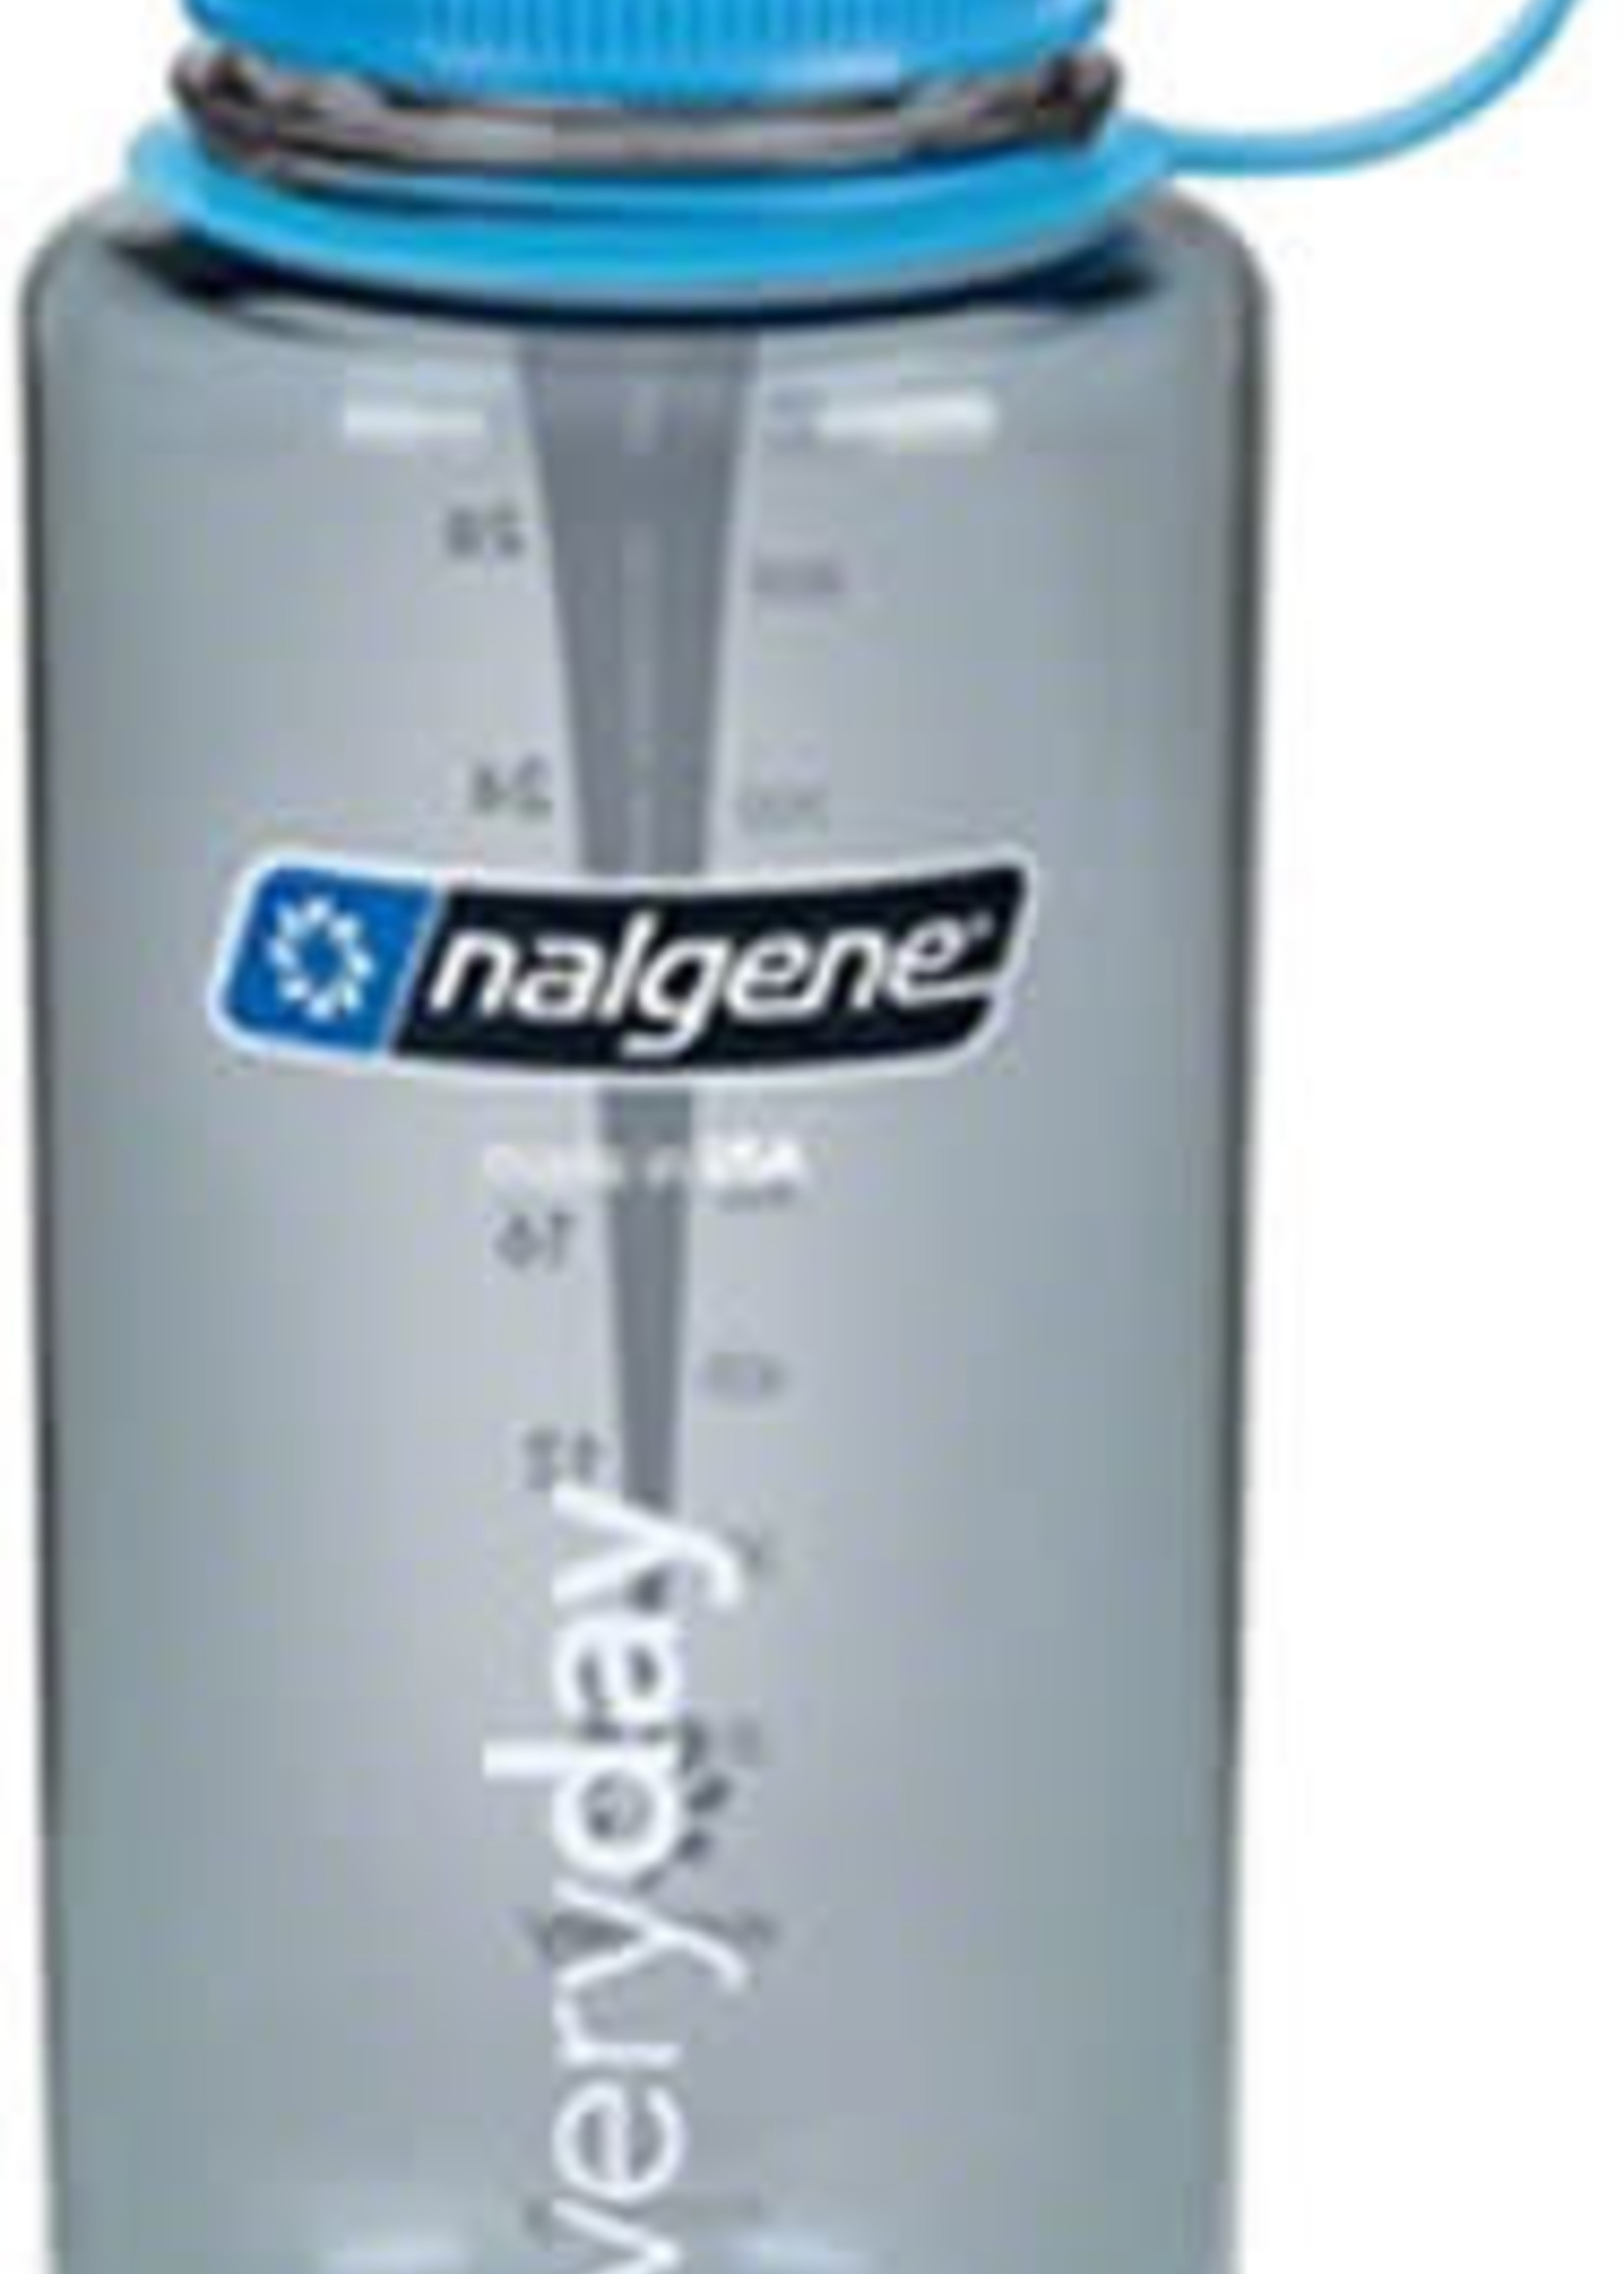 Nalgene Nalgene Narrow Mouth Water Bottle: 32oz, Gray